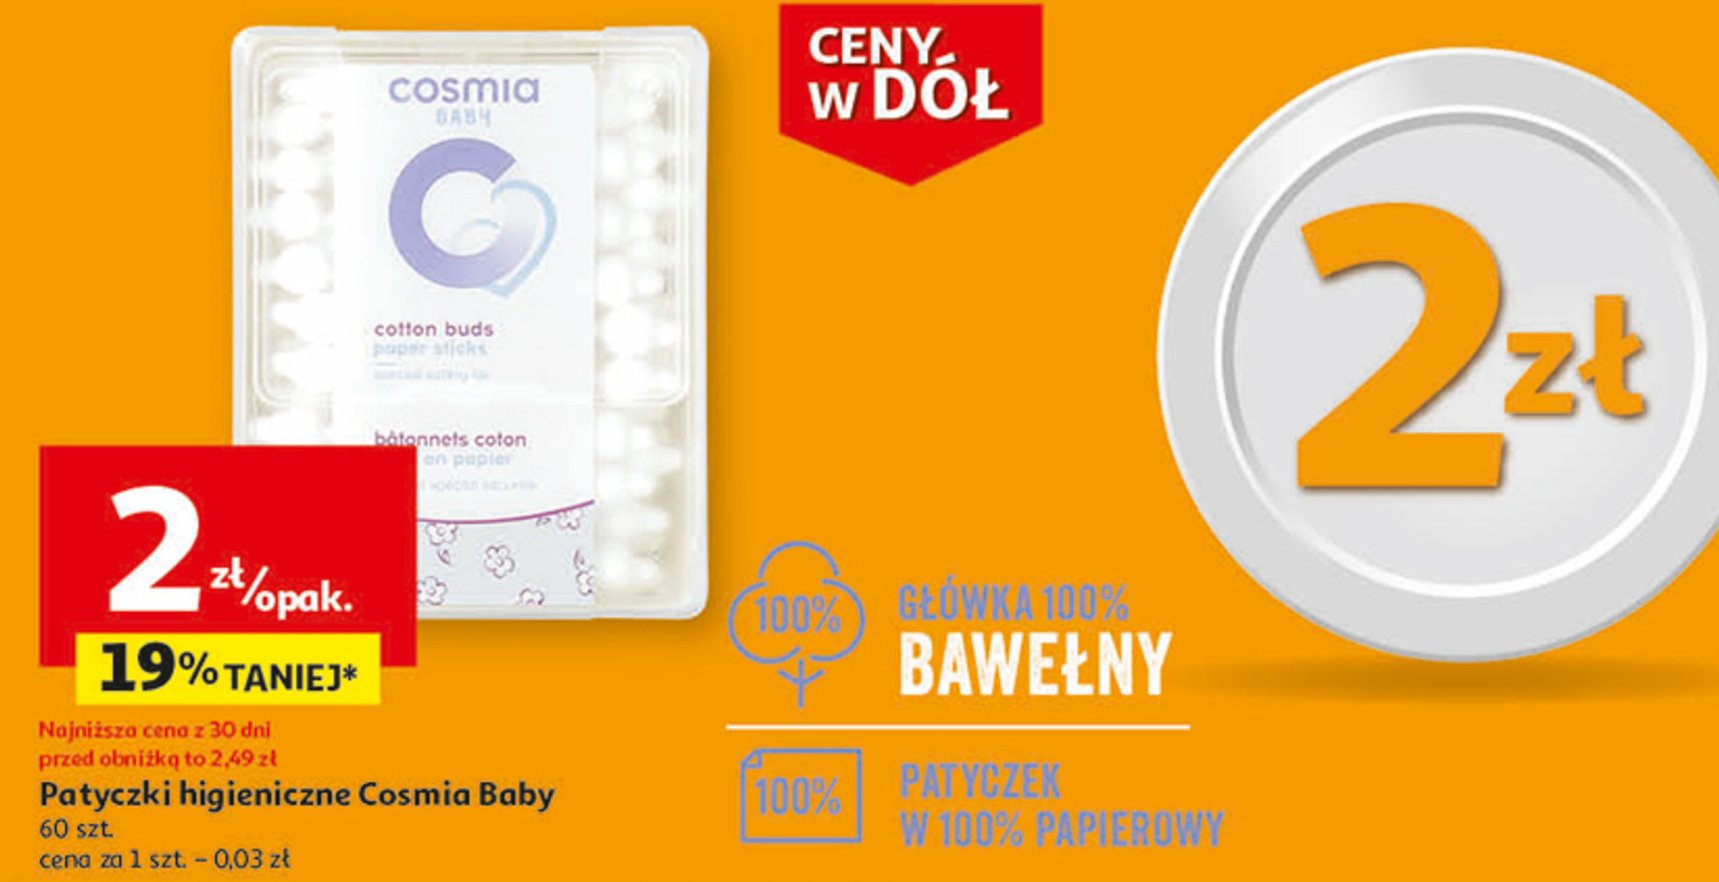 Patyczki higieniczne bawełniane dla dzieci Cosmia baby promocja